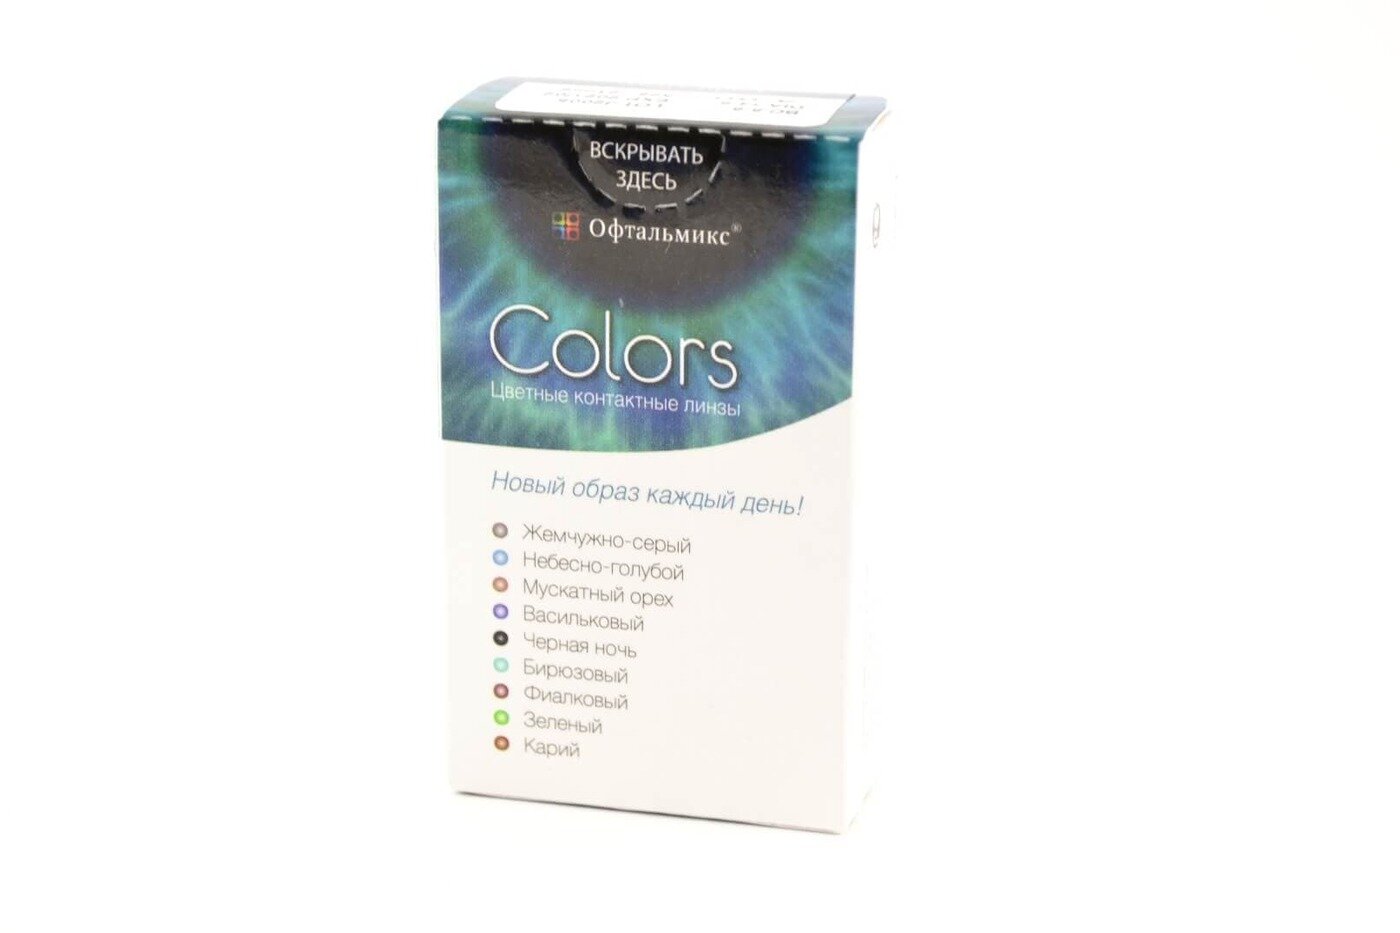 Офтальмикс Colors New (2 линзы)-1.00 R.8.6 Olive(Оливковый)